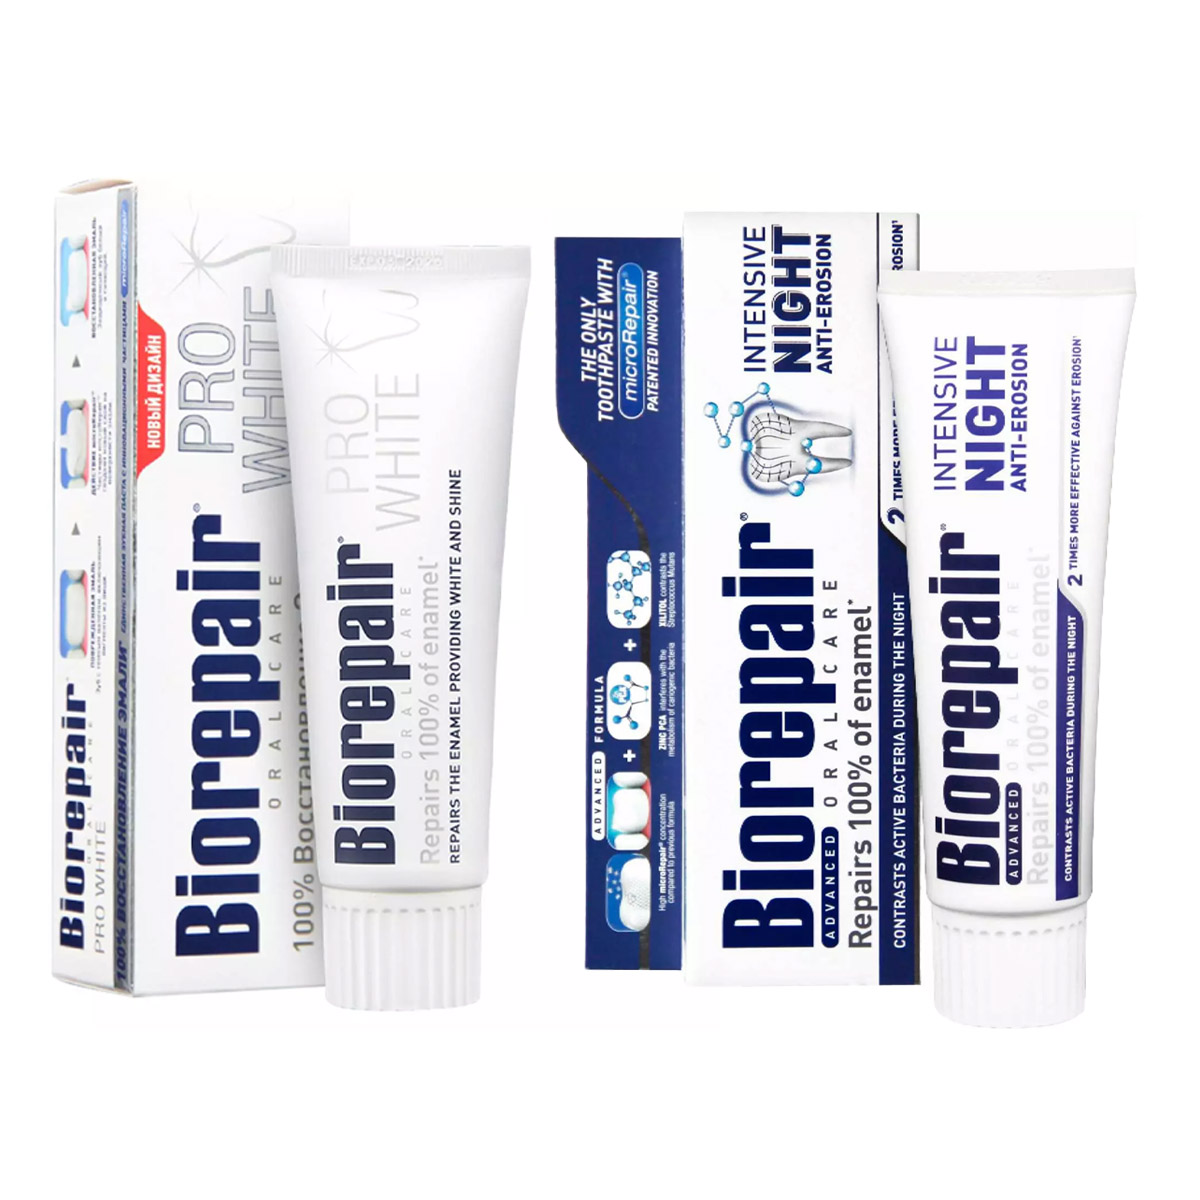 Biorepair Набор зубных паст для сохранения белизны, 2х75 мл (Biorepair, Отбеливание и лечение) набор зубных паст biorepair для всей семьи земляника